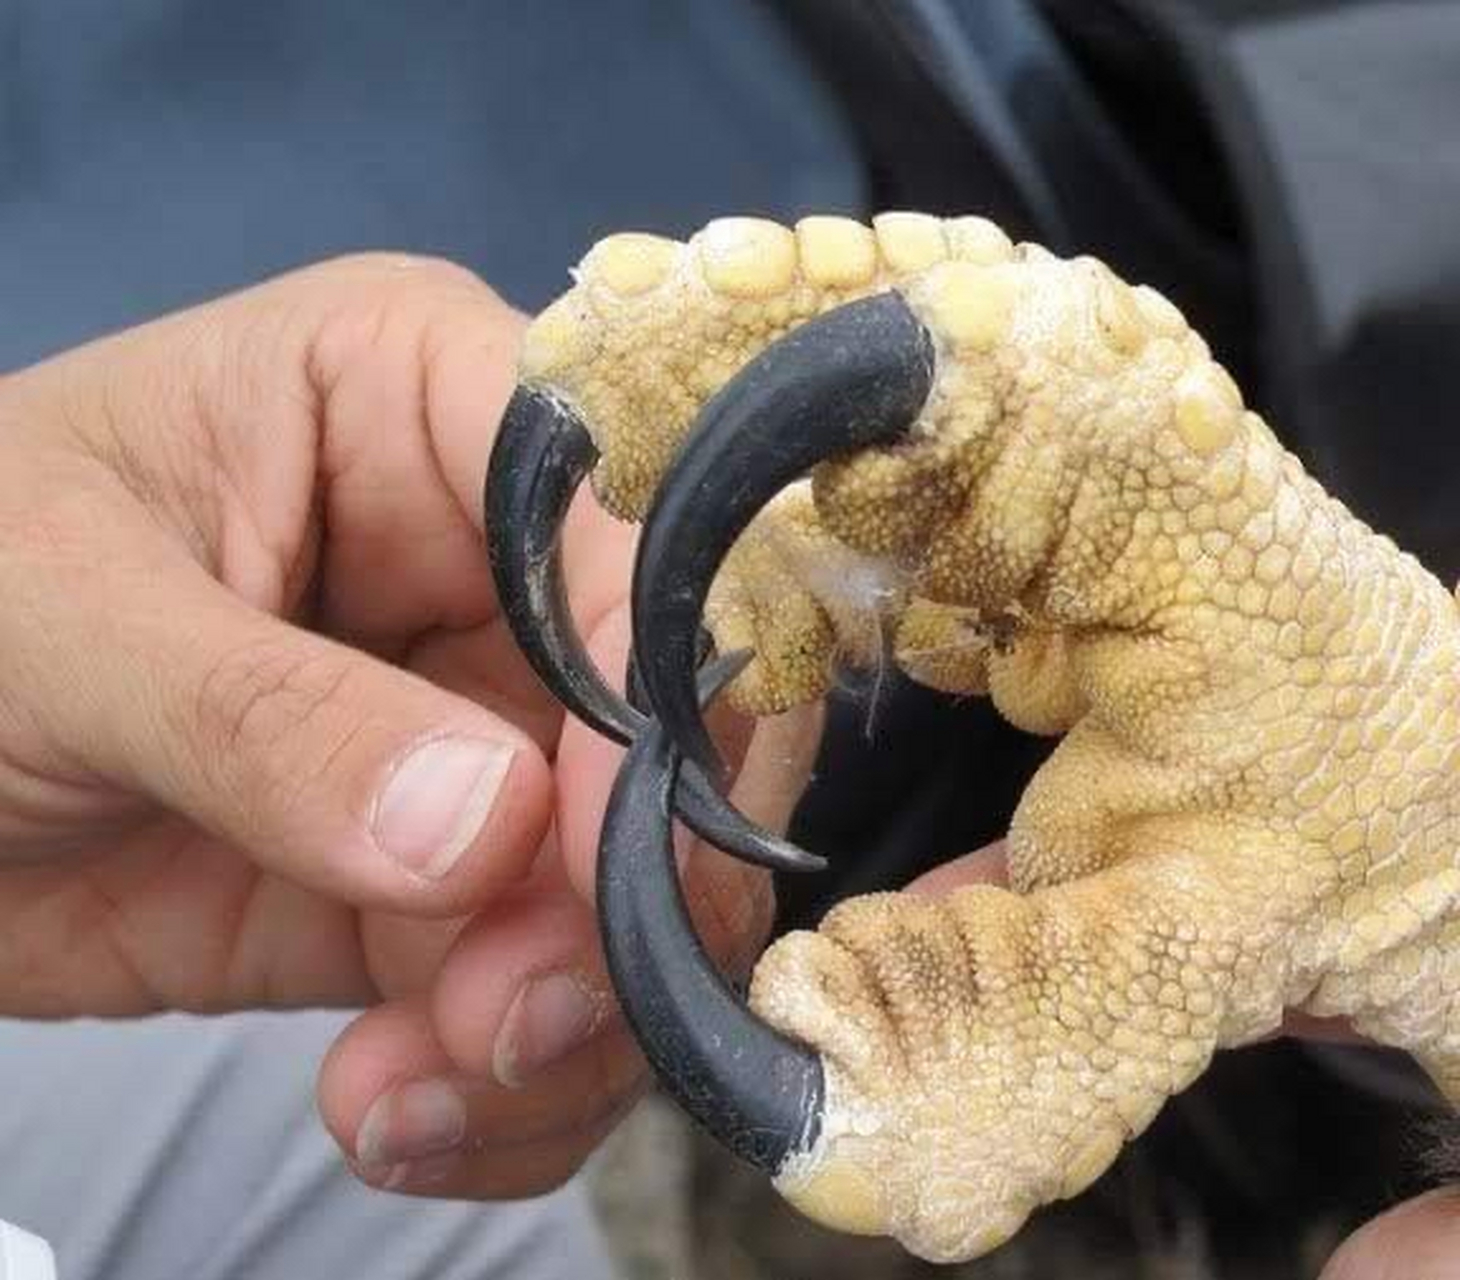 有没有想过鹰的爪子与人的手相比有多大?  这张照片给你一个想法